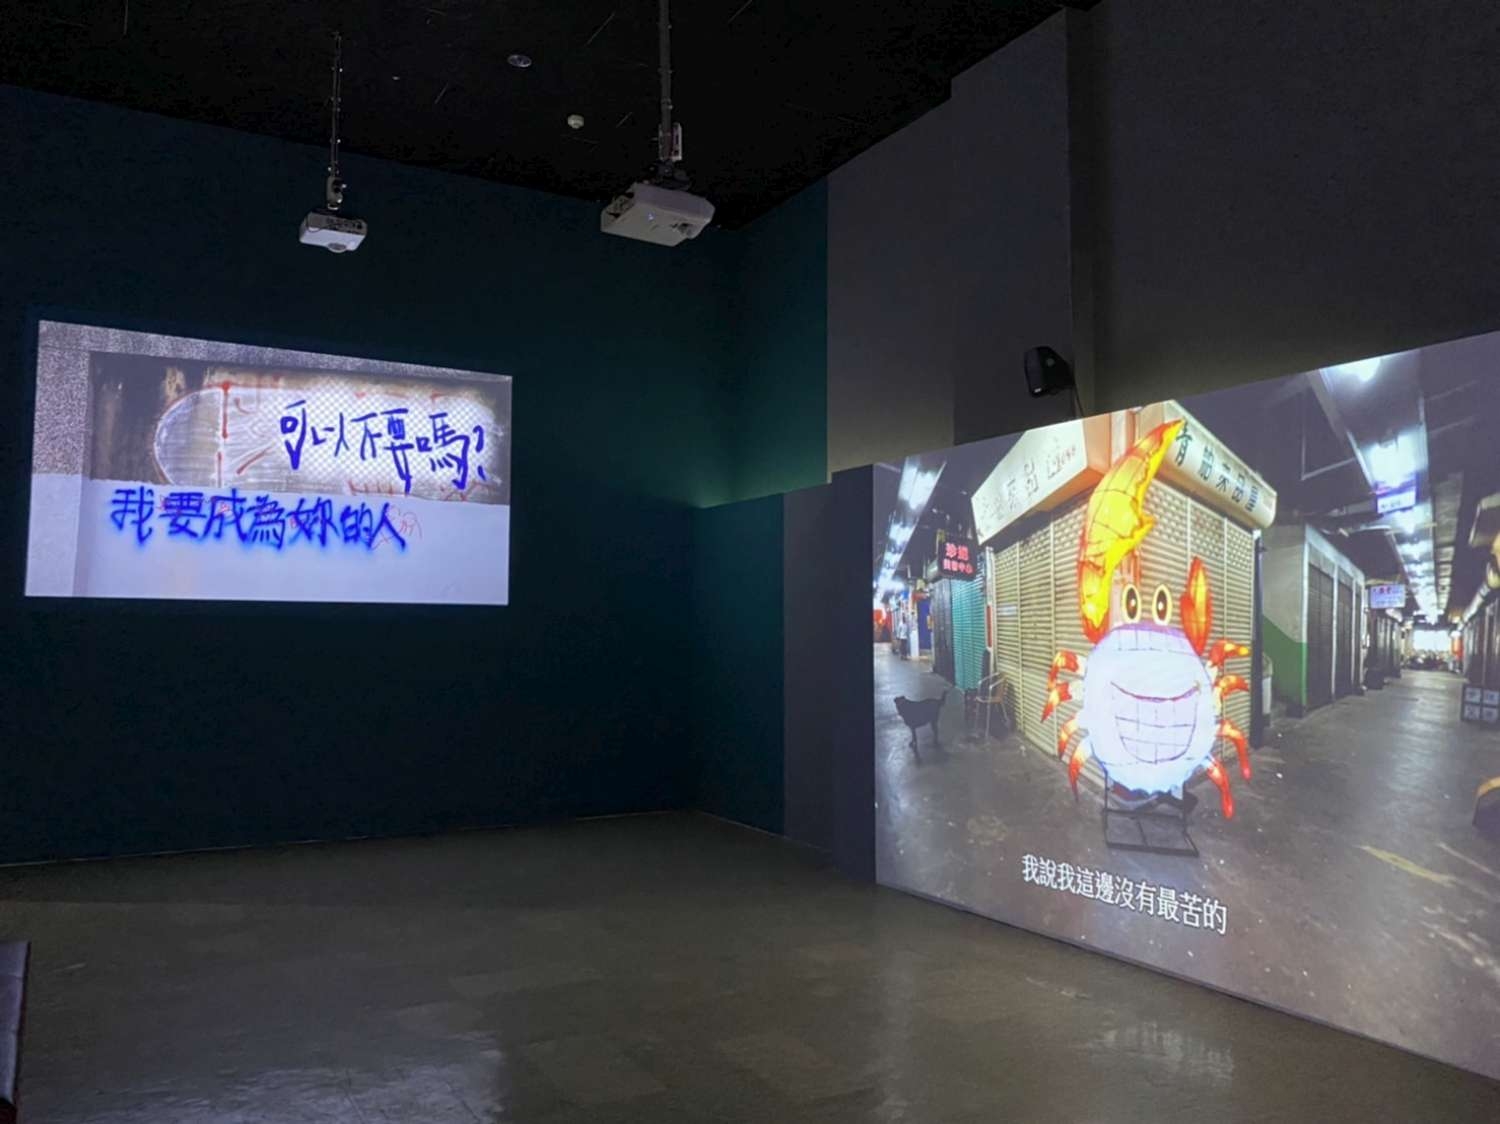 藝術家黃彥超、蔡夢琦作品《東門是場夢，台北沒有愛》。